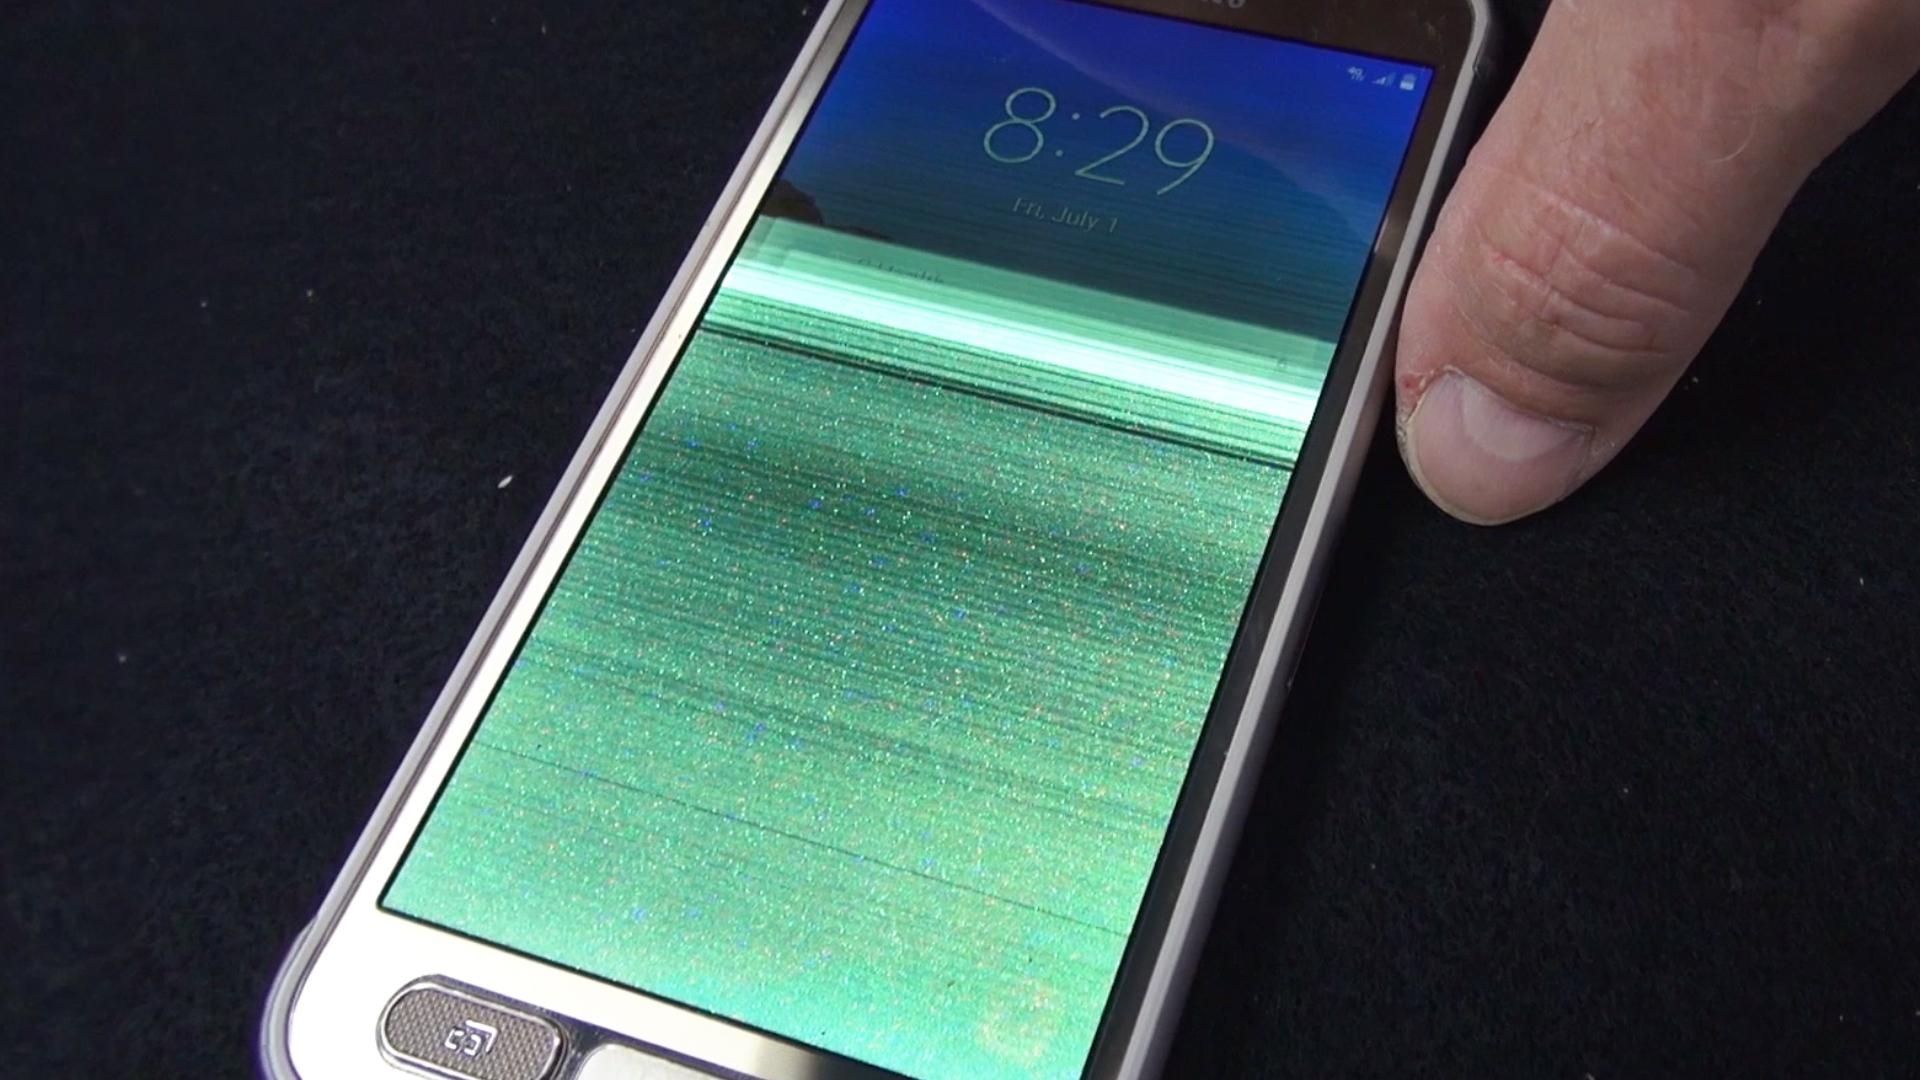 ขึ้นชื่อว่ากันน้ำแต่กันไม่ได้! ทดสอบ Samsung Galaxy S7 Active การกันน้ำ แต่น้ำเข้าเครื่องซะงั้น